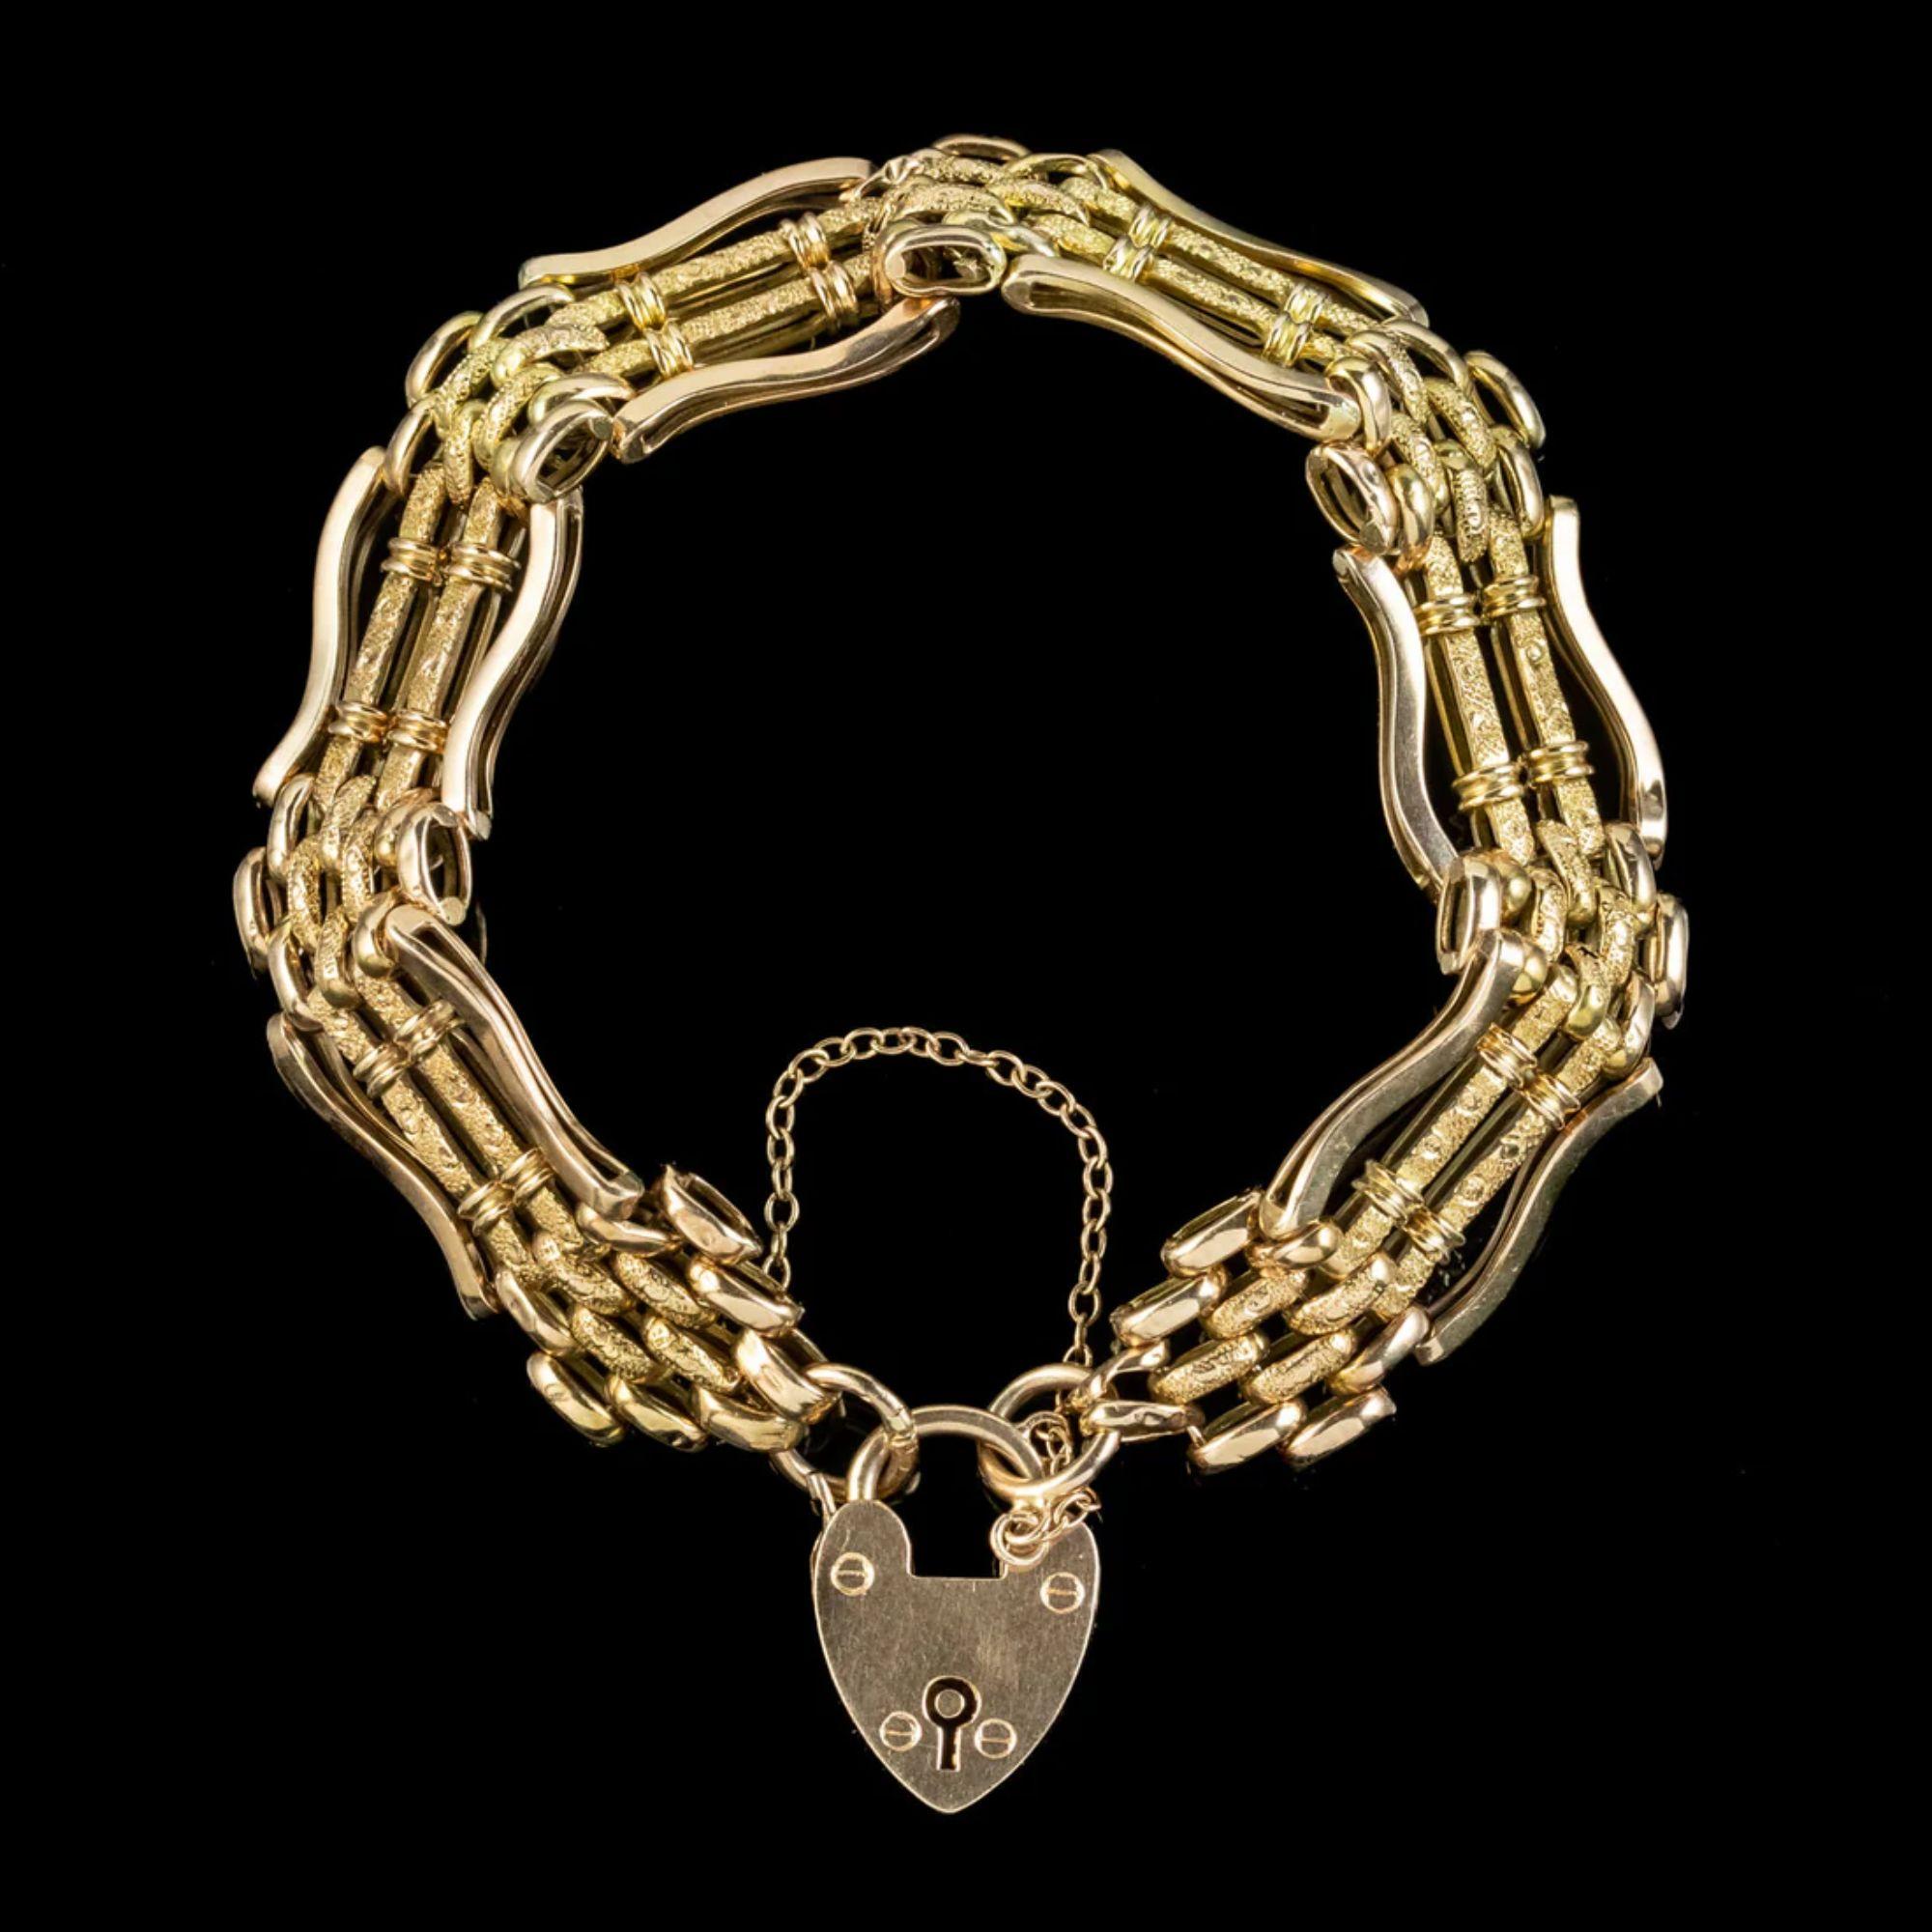 Ein romantisches, antikes, viktorianisches Torarmband aus dem späten 19. Jahrhundert, vollständig aus 9-karätigem Gold gefertigt. Das Band besteht aus geschwungenen Gliedern, die in der Mitte mit einem strukturierten Muster geätzt sind, und wird von